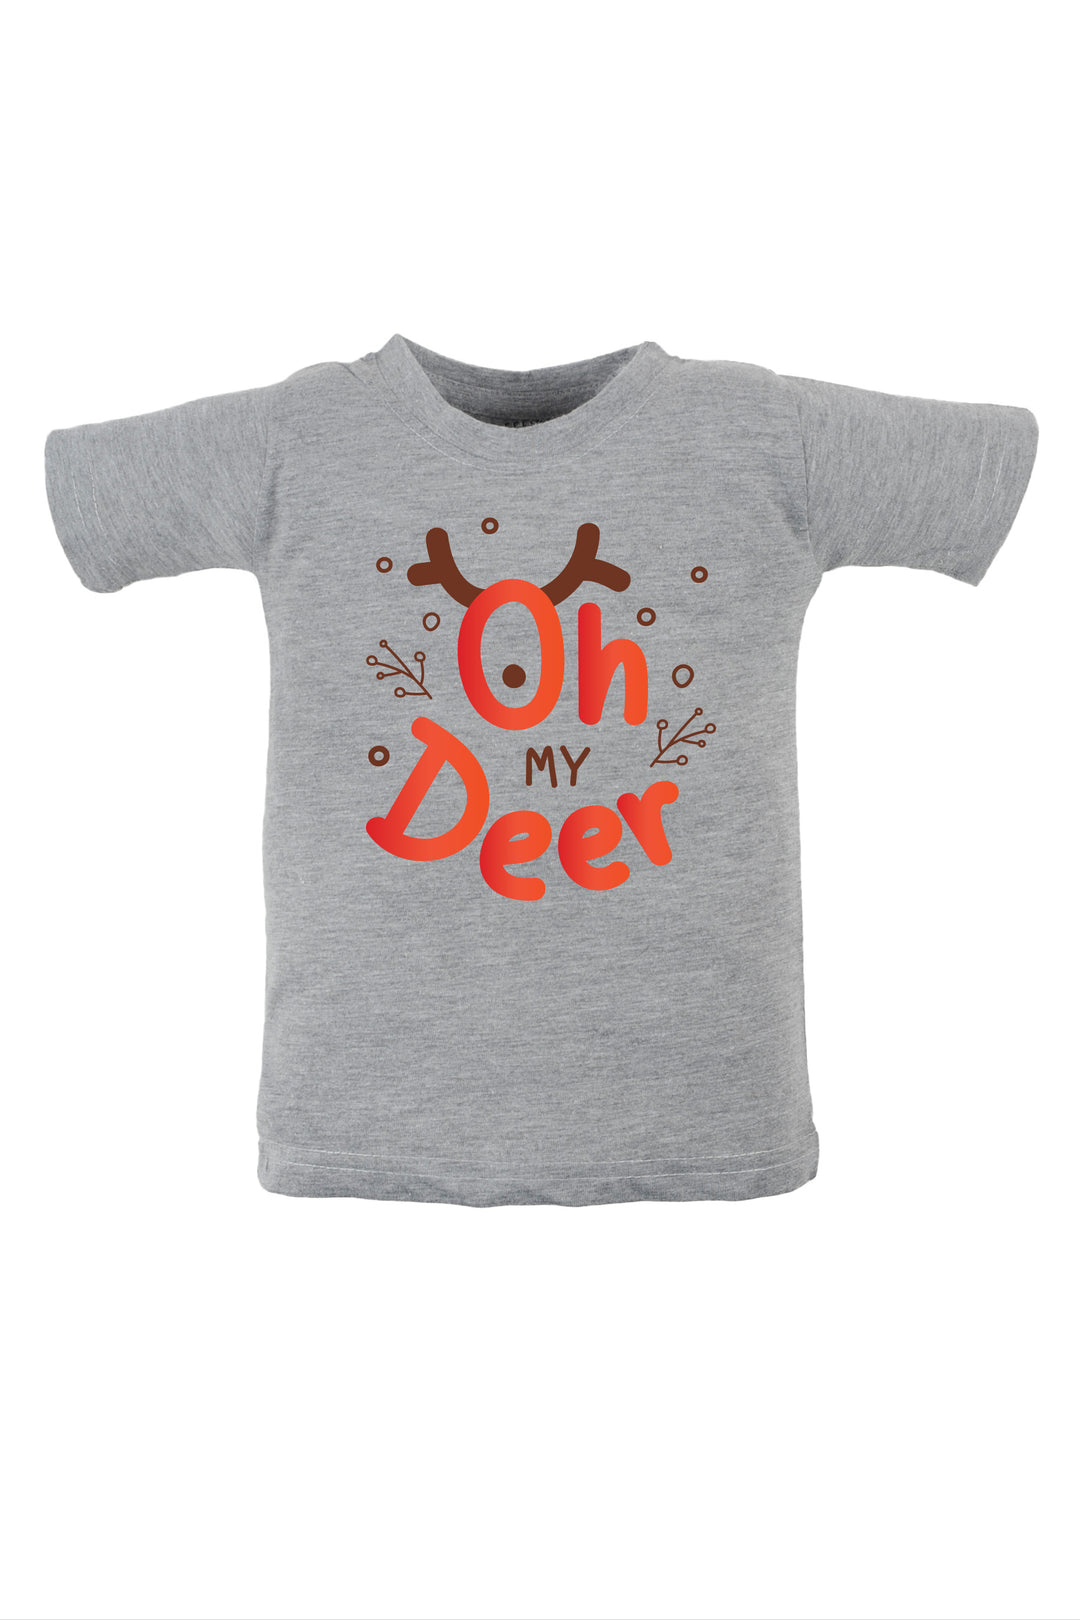 Oh My Deer Kids T Shirt